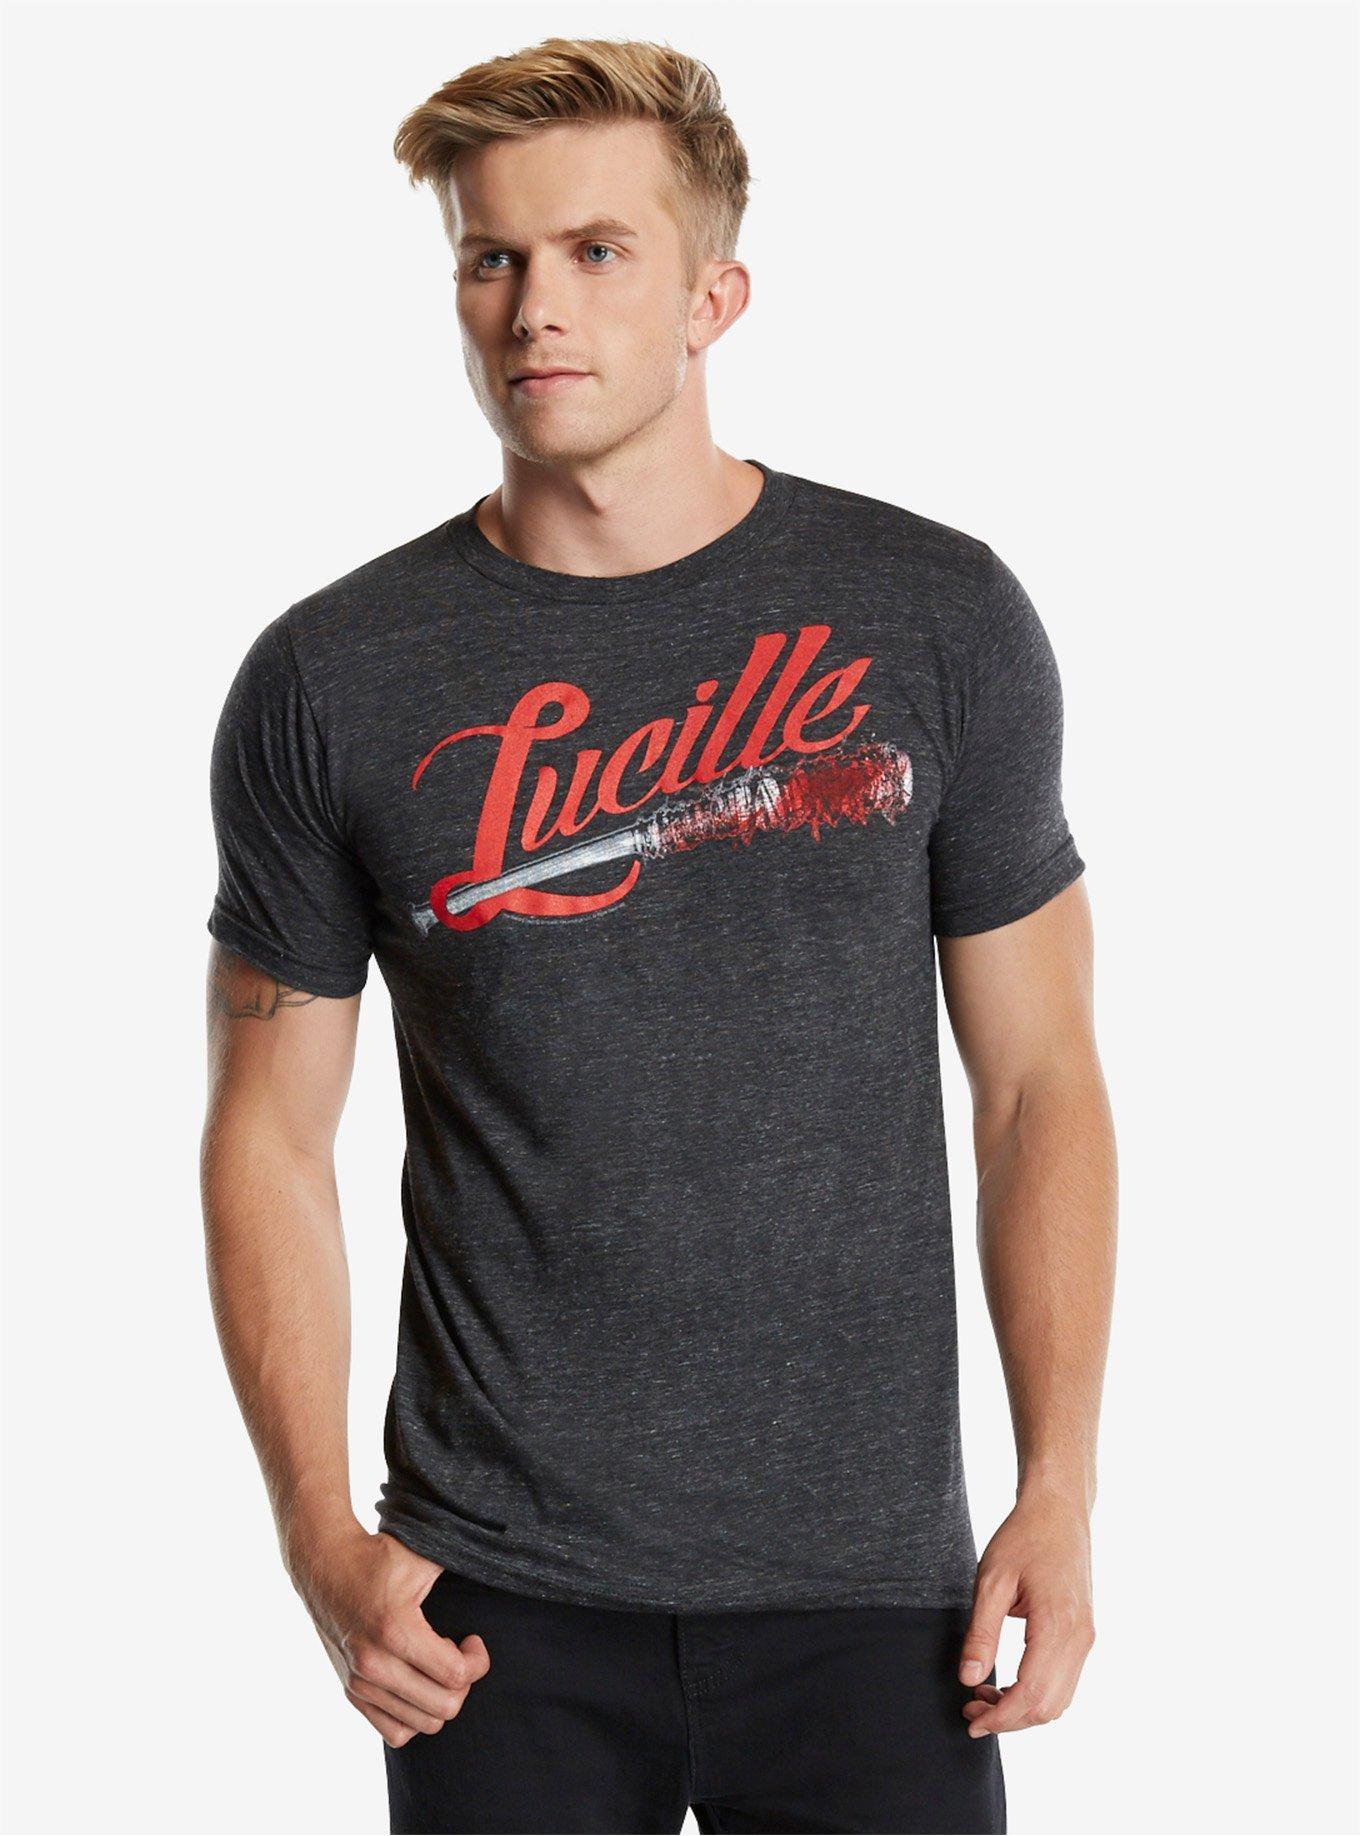 The Walking Dead Lucille Bat T-Shirt | BoxLunch